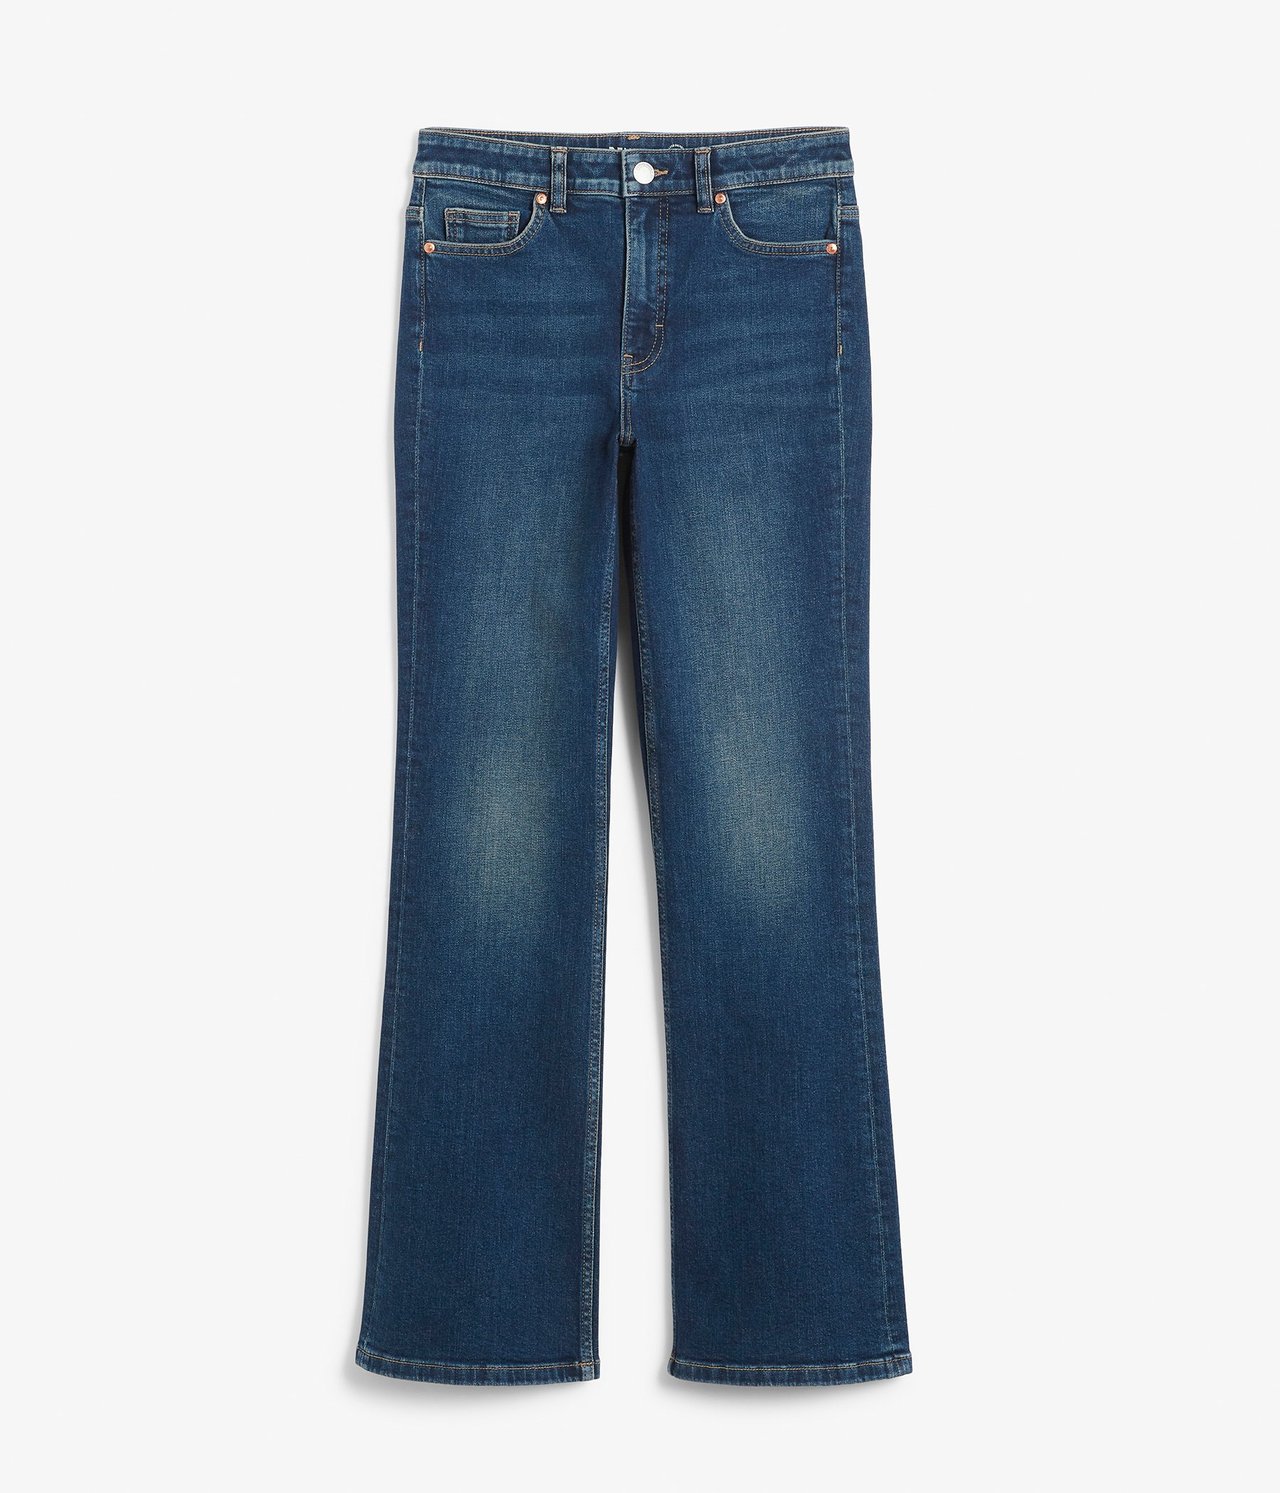 Flare jeans regular waist Mørk denim - null - 1